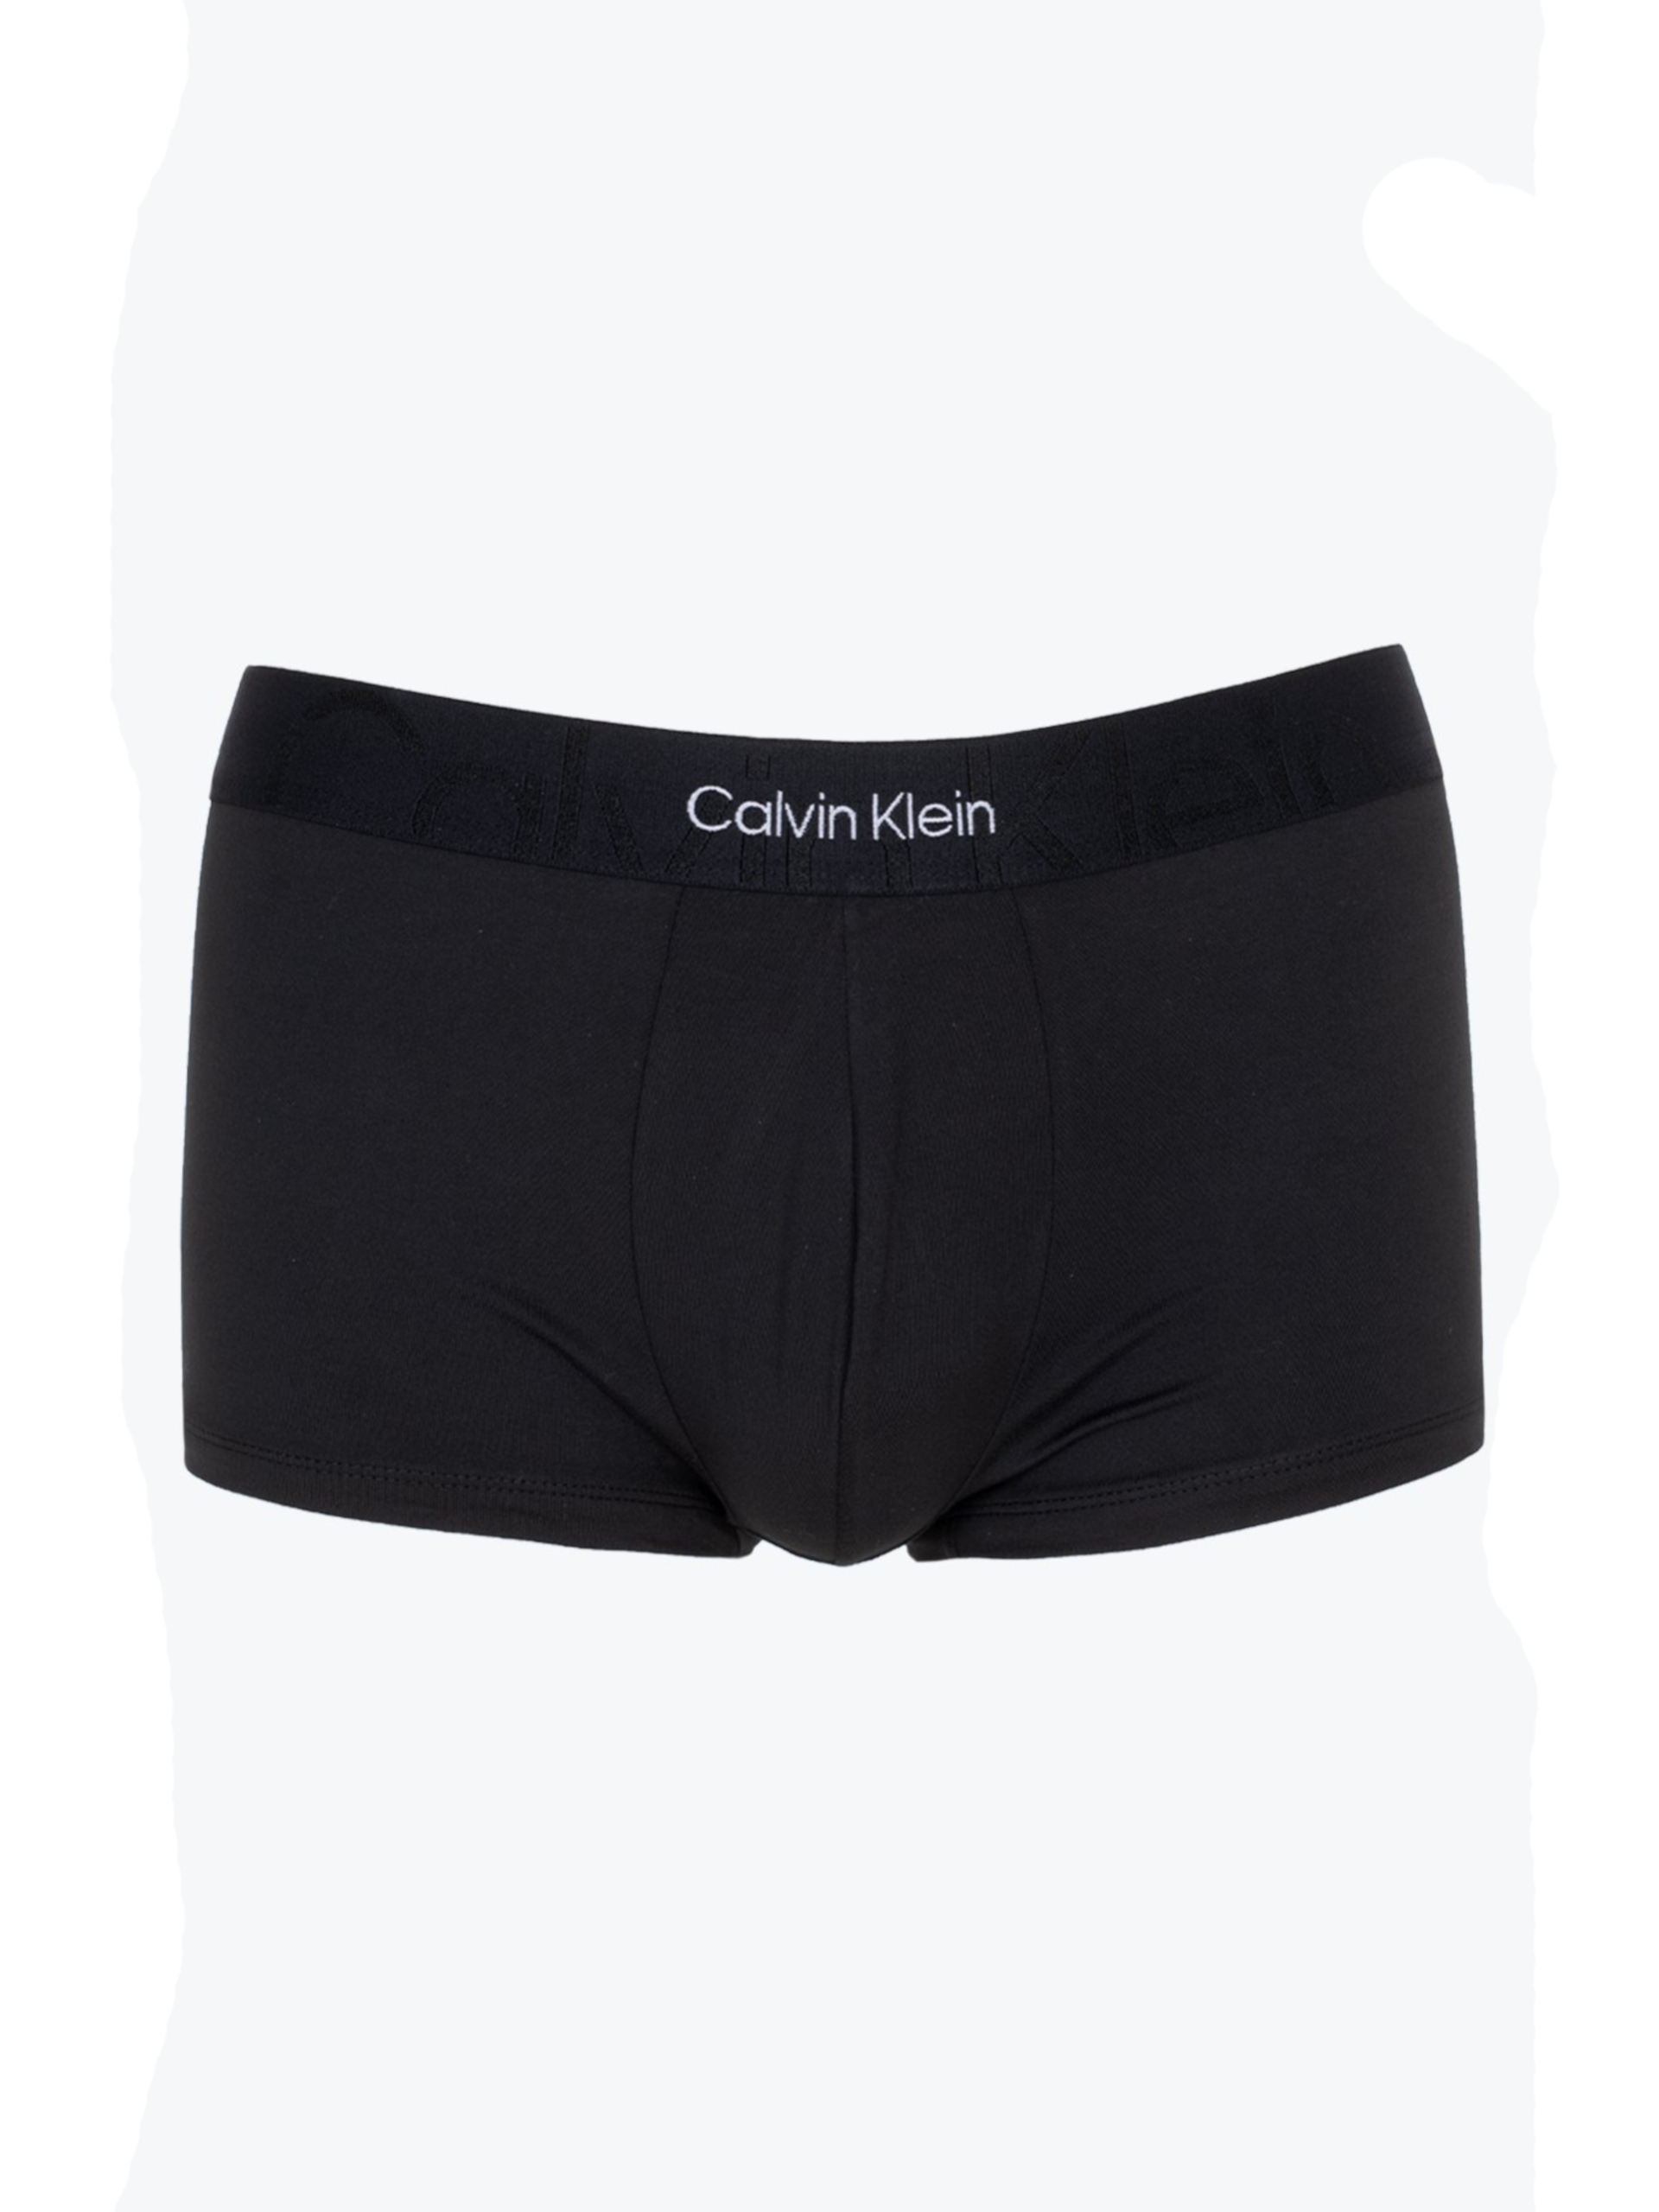 Levně Calvin Klein pánské černé boxerky - XL (UB1)